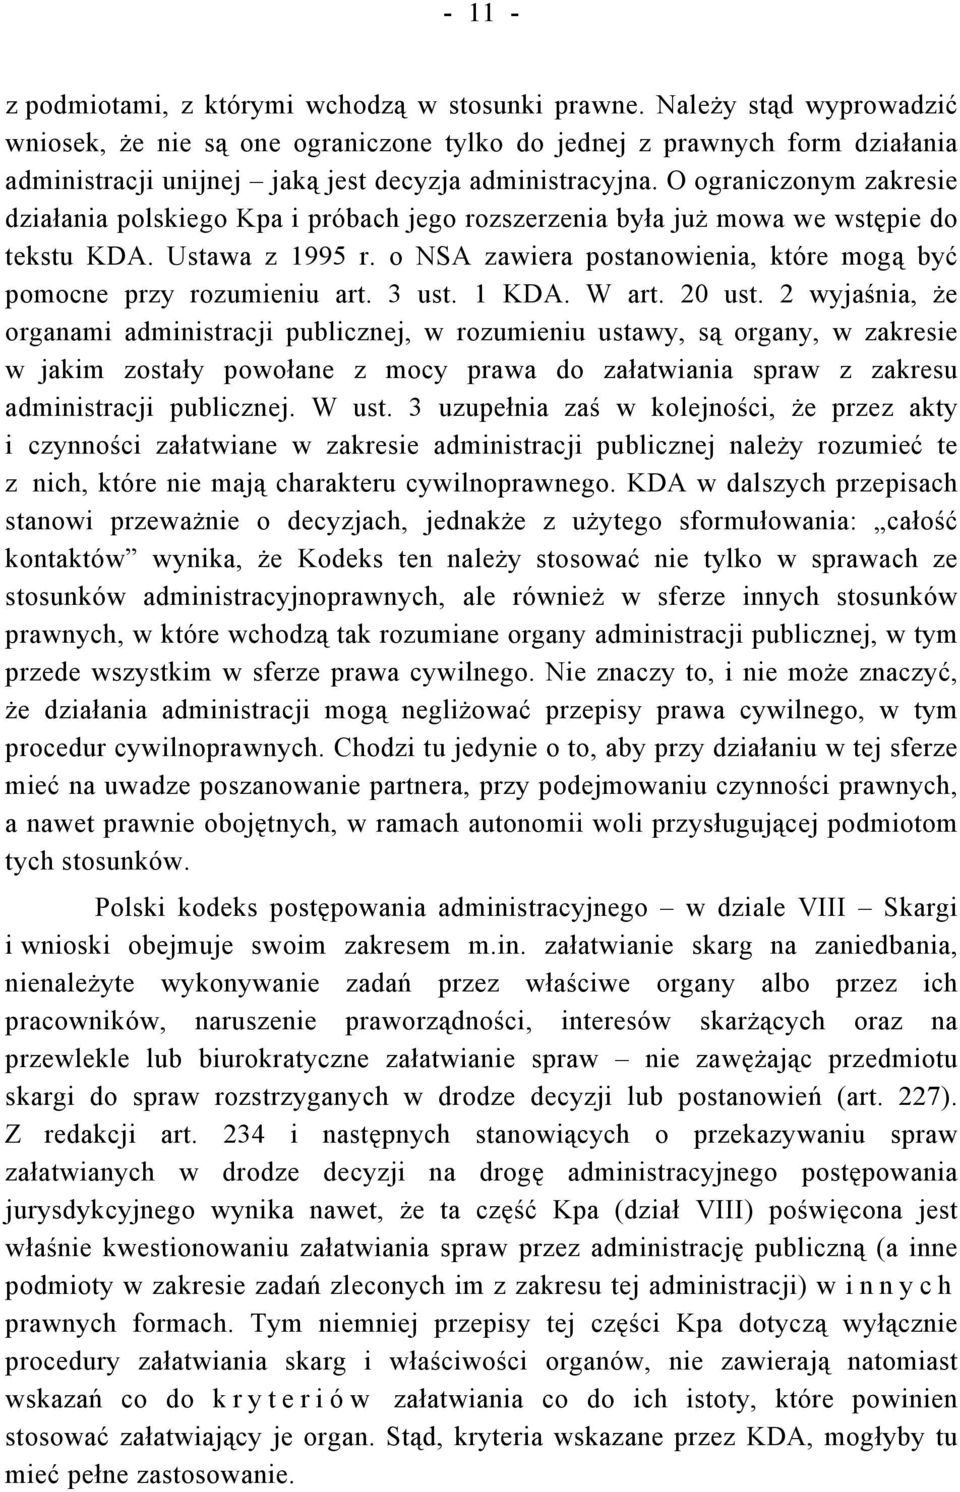 O ograniczonym zakresie działania polskiego Kpa i próbach jego rozszerzenia była już mowa we wstępie do tekstu KDA. Ustawa z 1995 r.